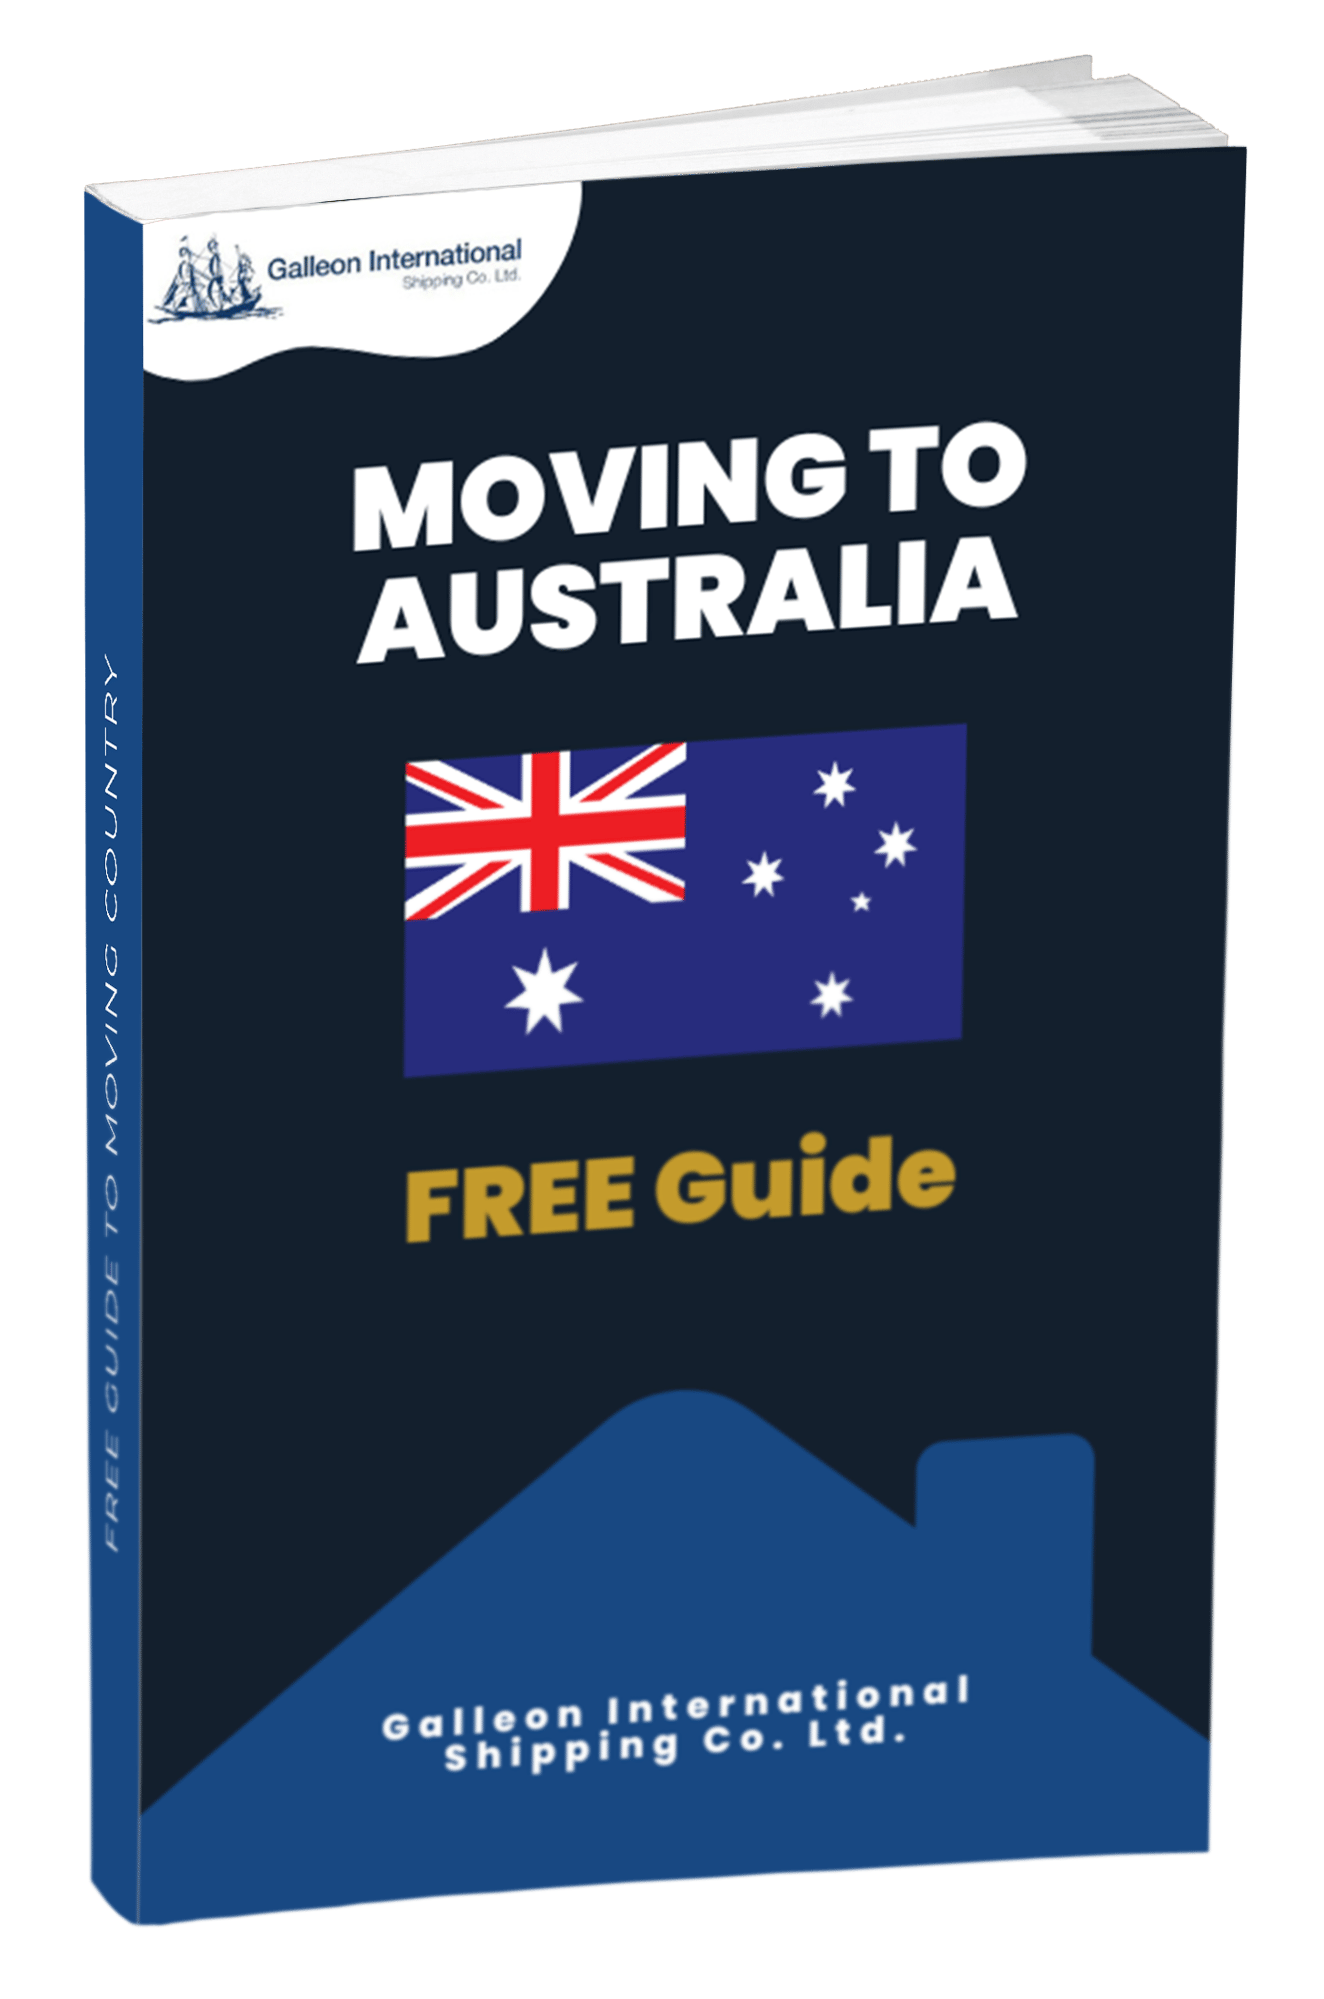 Australia Guide